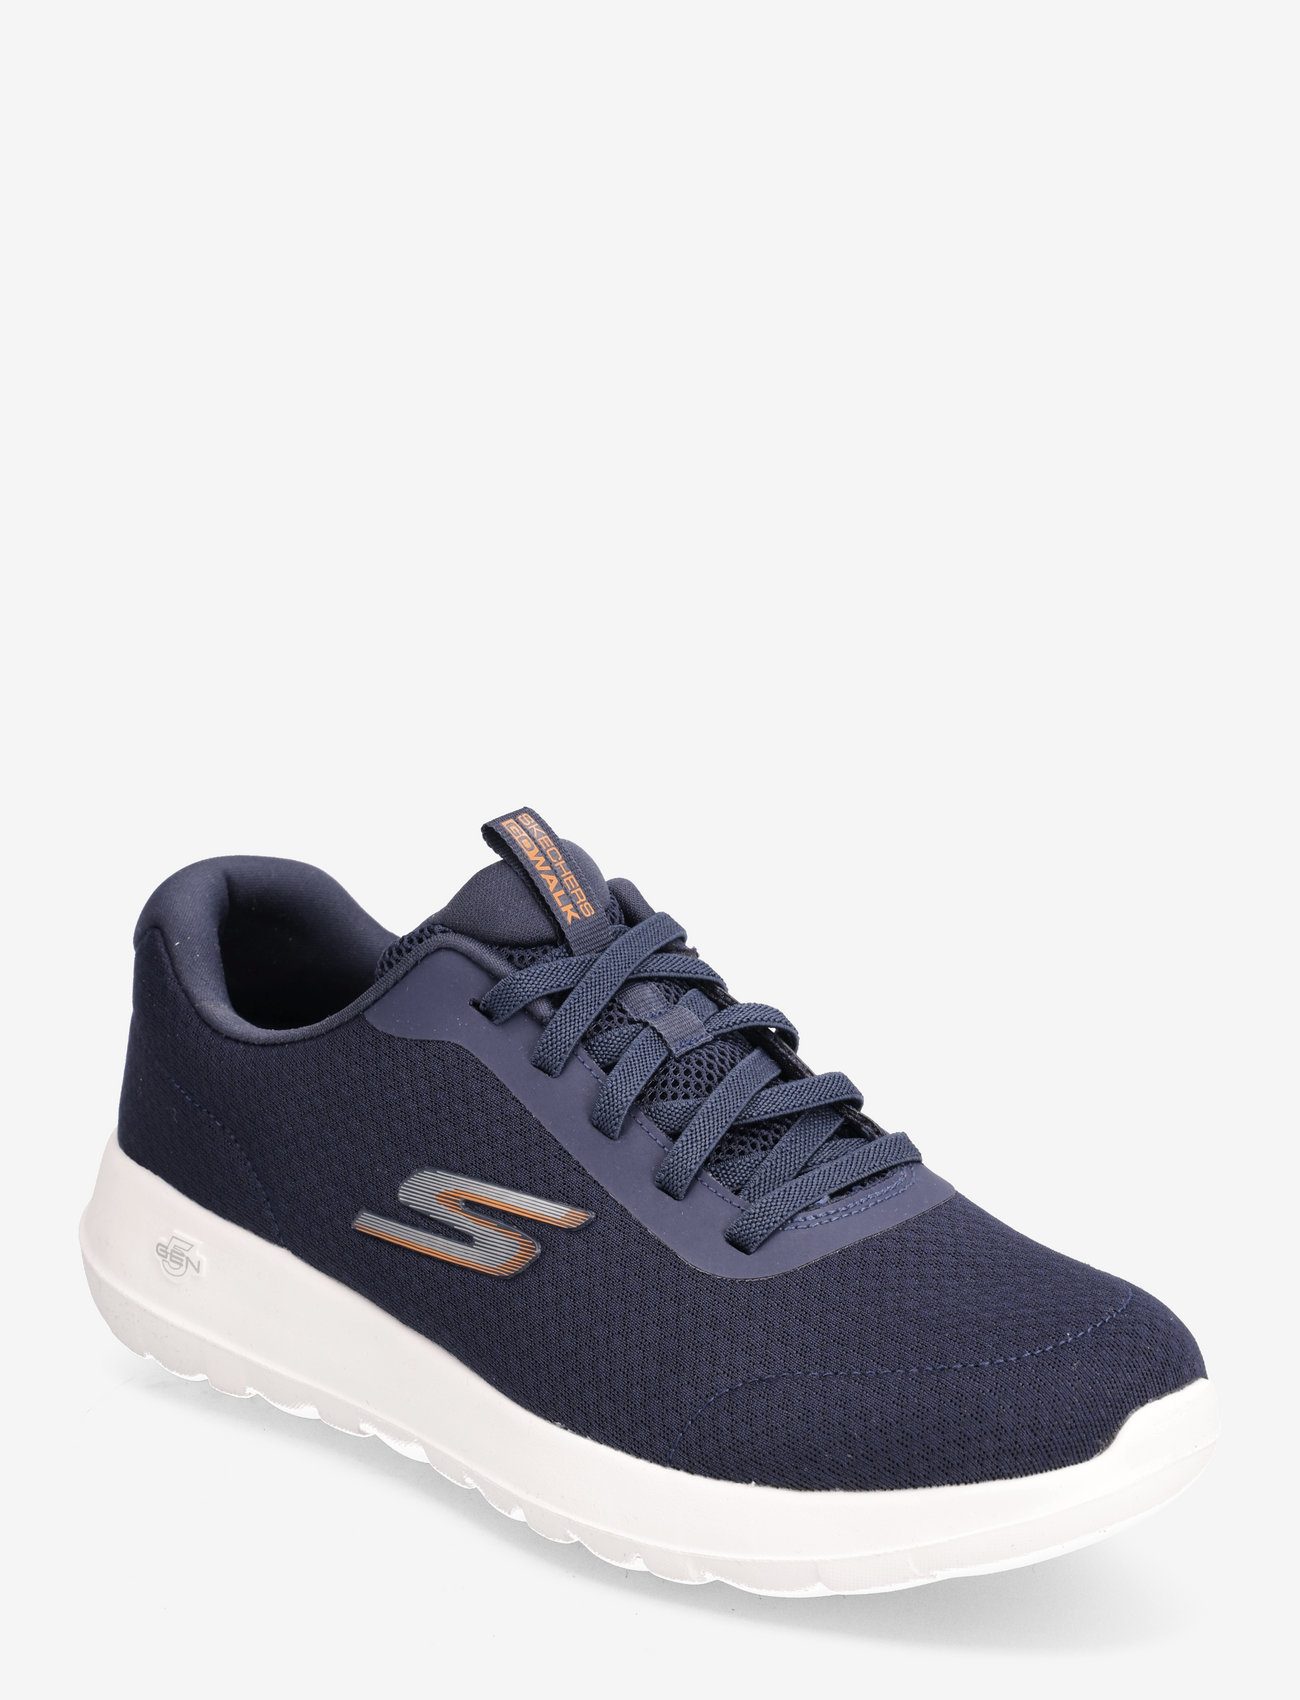 Skechers - Mens Go Walk Max - Midshore - laag sneakers - nvor navy orange - 0